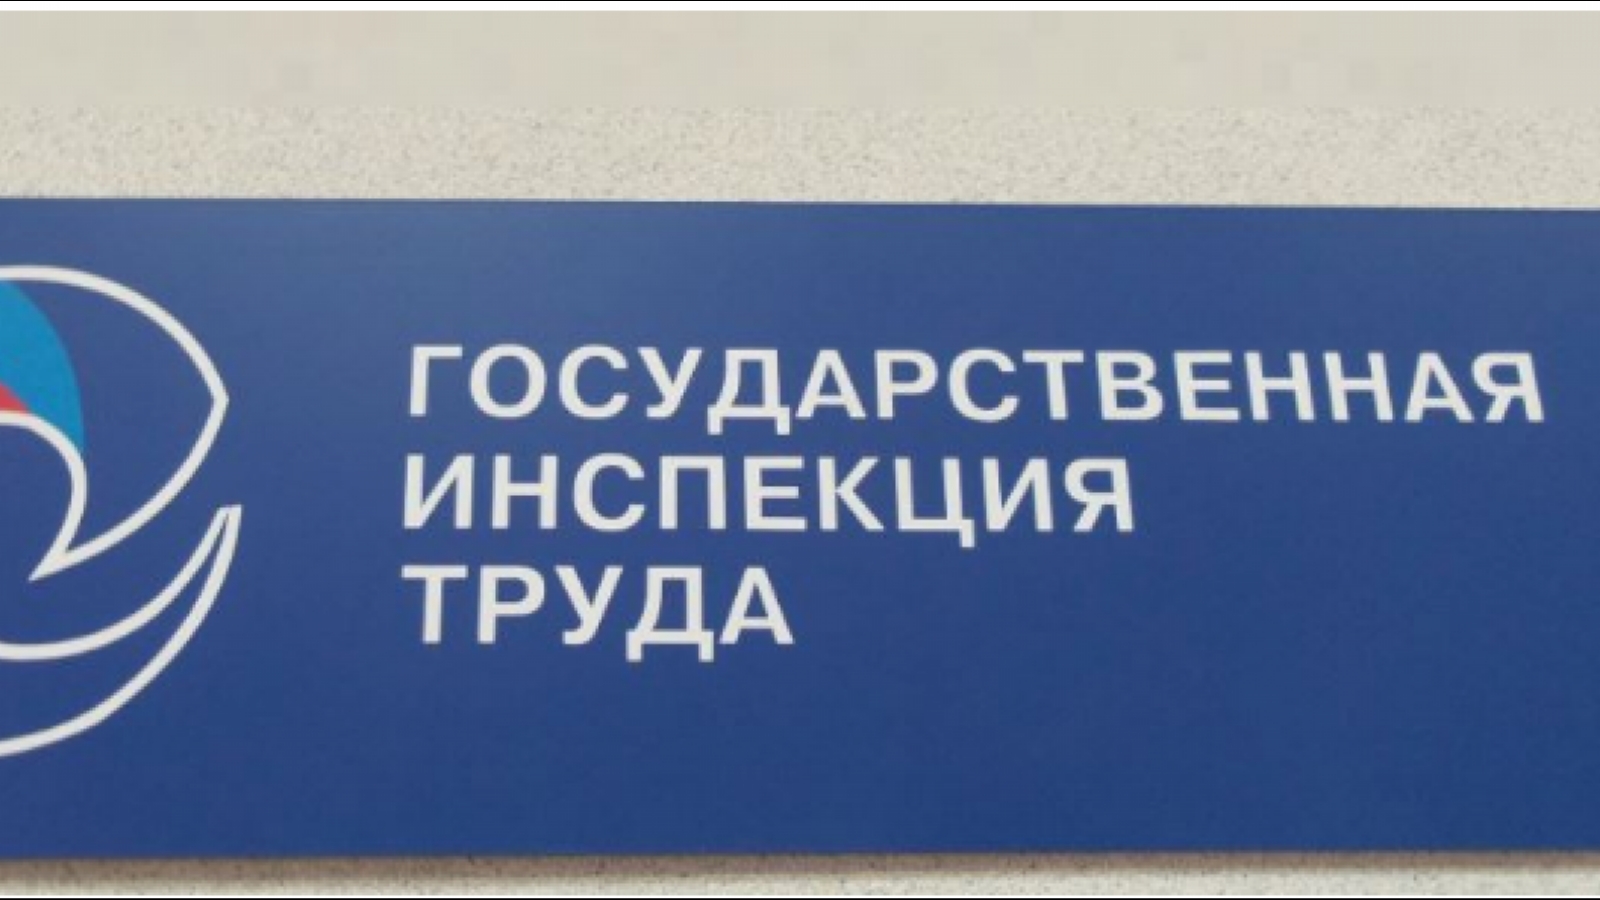 Инспекция труда Воронежа выявила нарушения в работе ЧОП